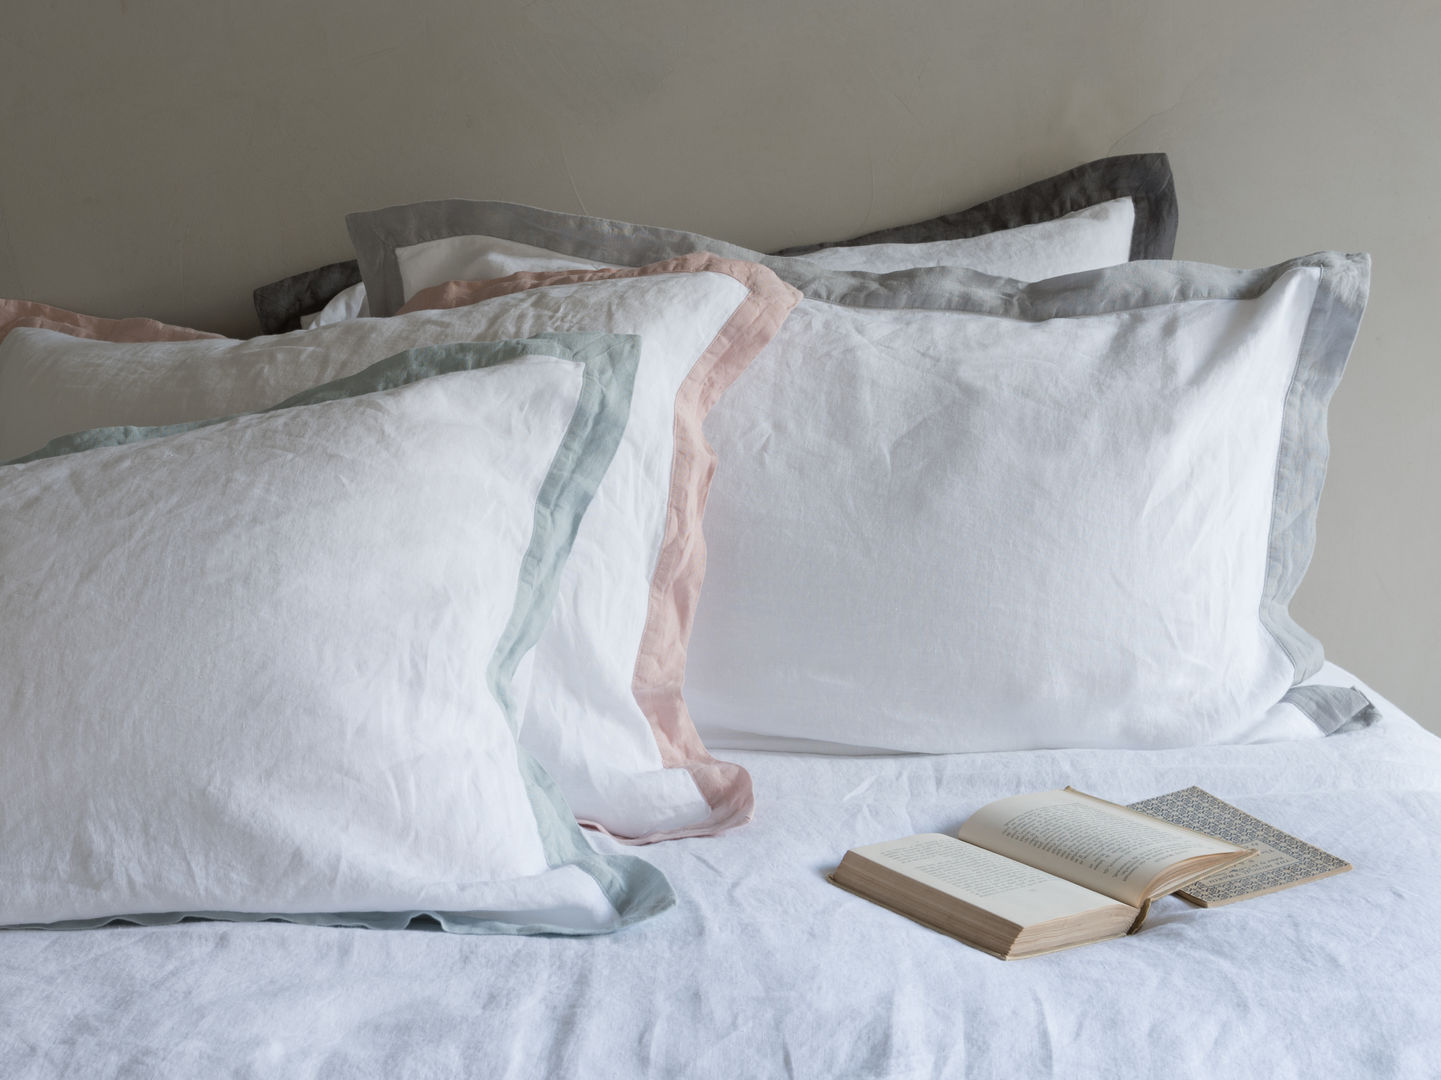 Lazy Daze bed linen Loaf Dormitorios modernos: Ideas, imágenes y decoración bedding,bedlinen,linen,trimming,grey,pink,charcoal,blue